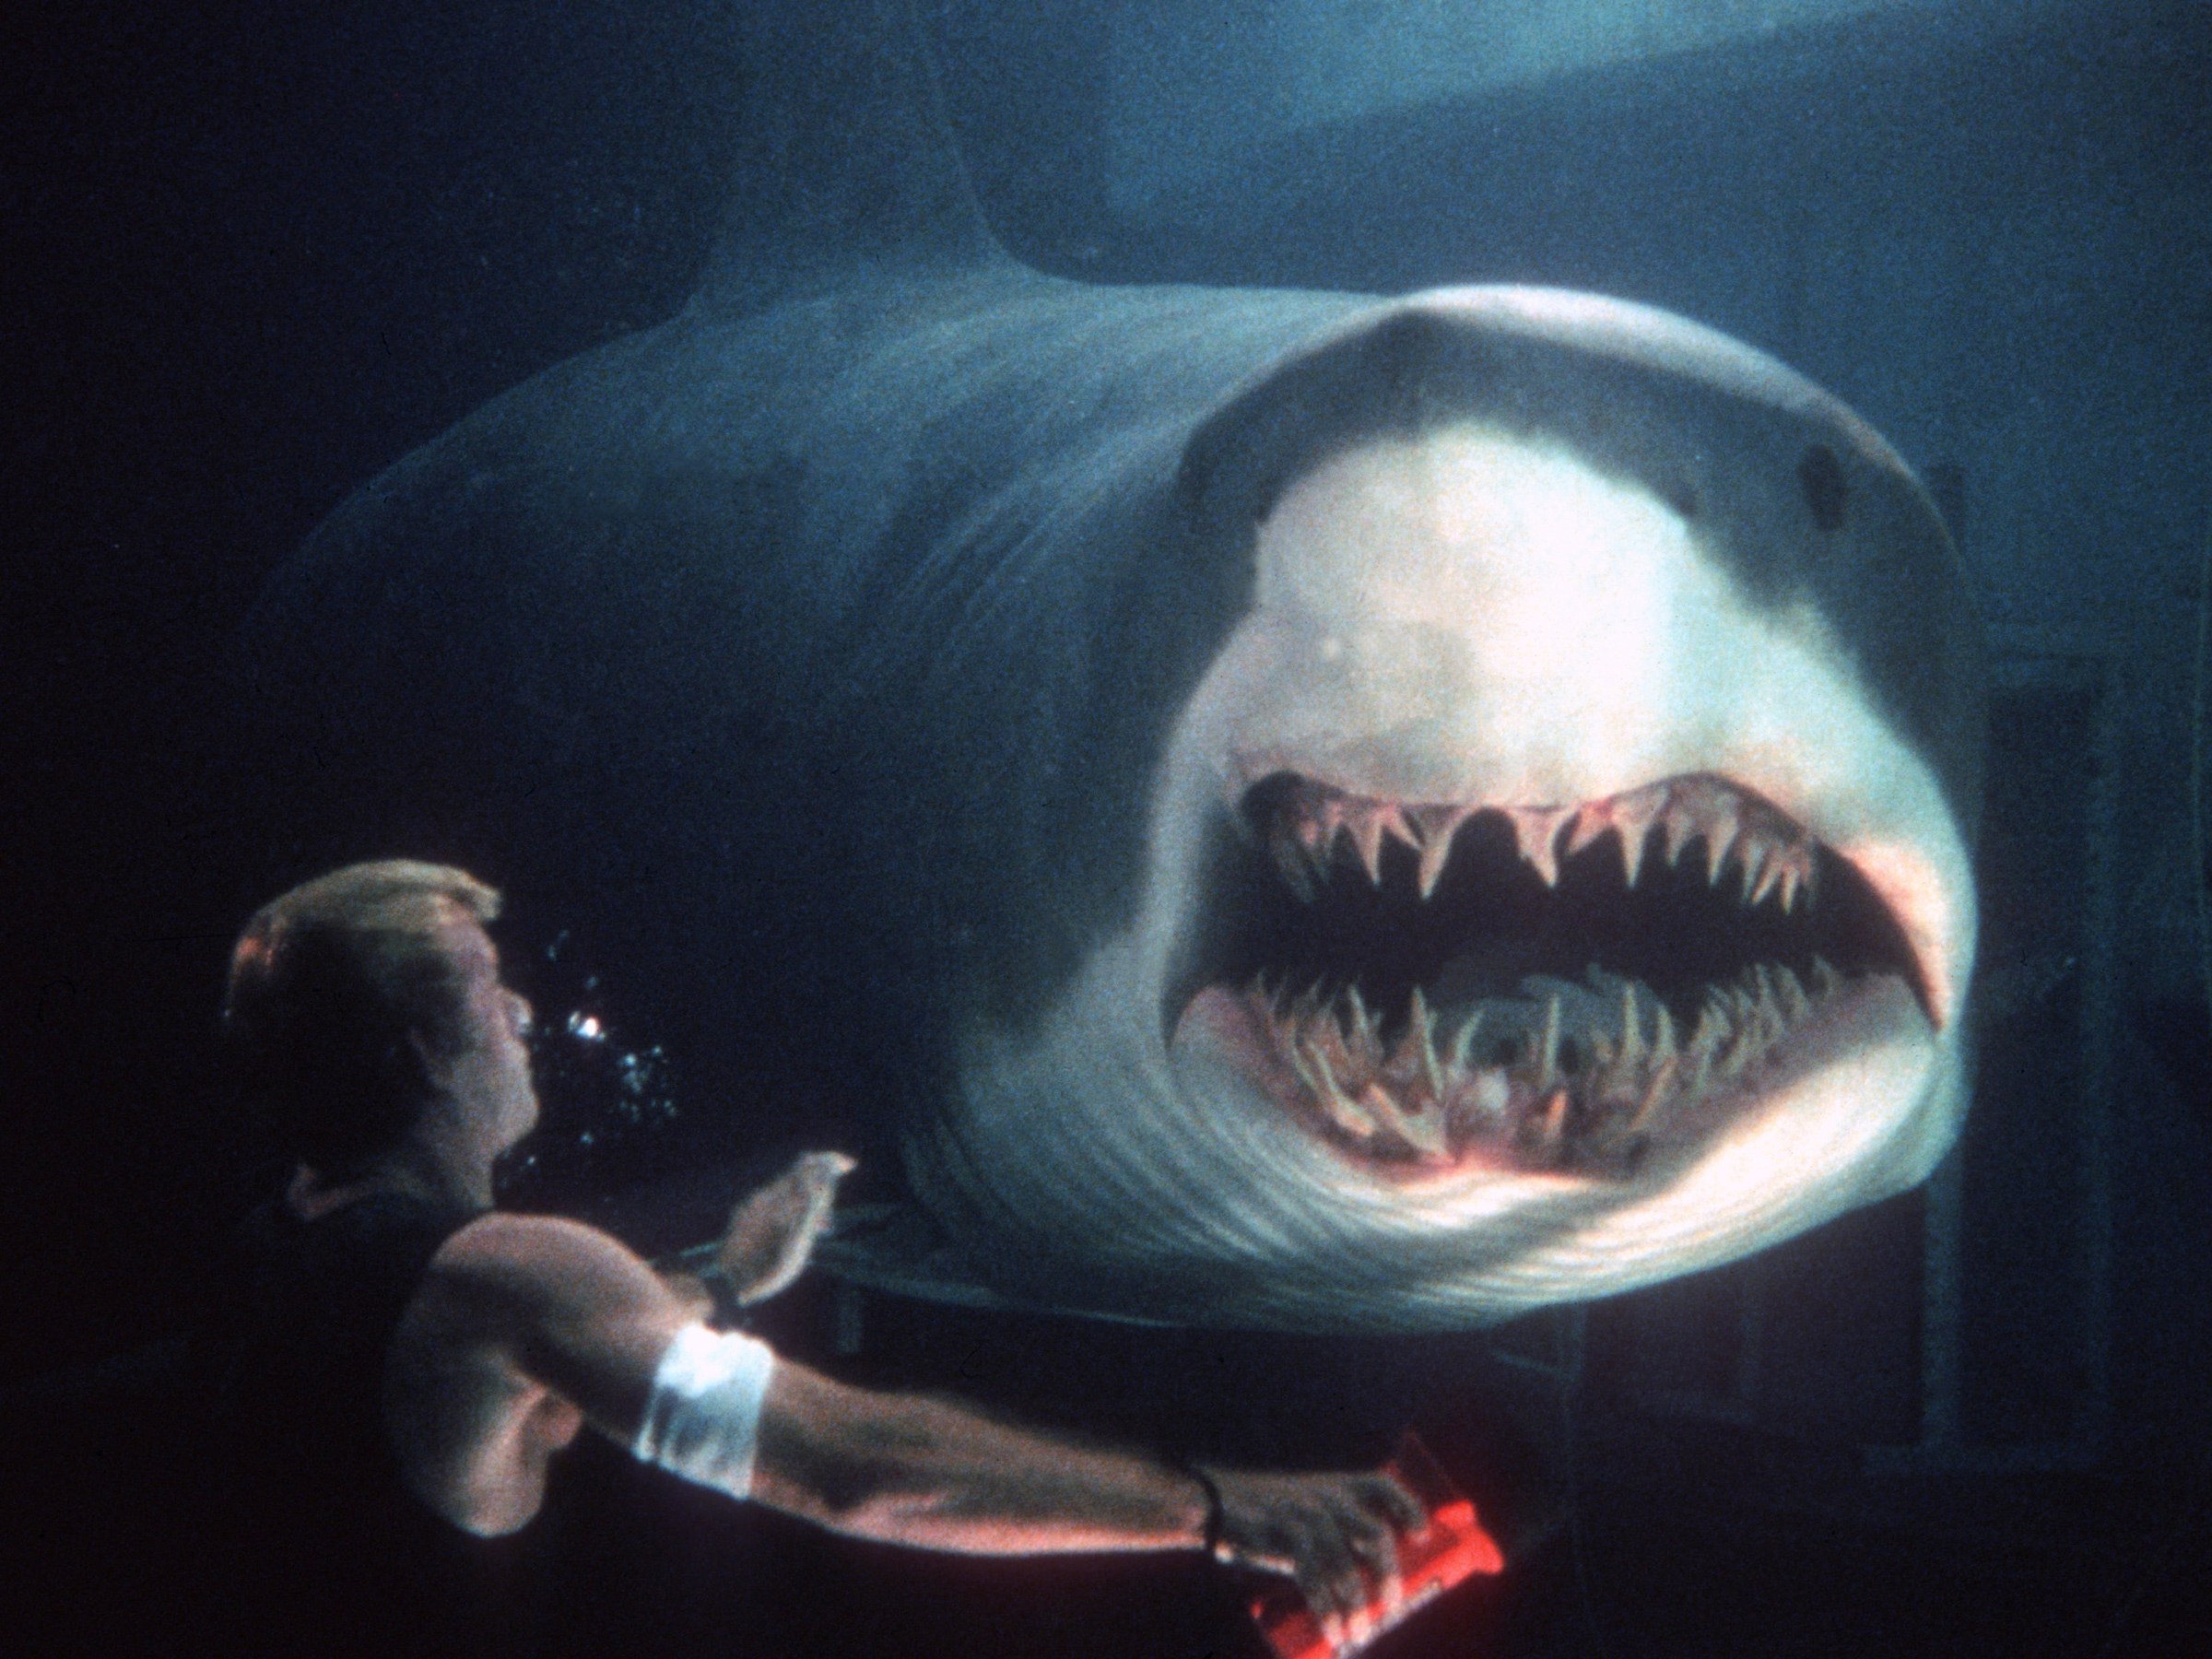 FLOOD - Every Shark Movie Is a Good Movie